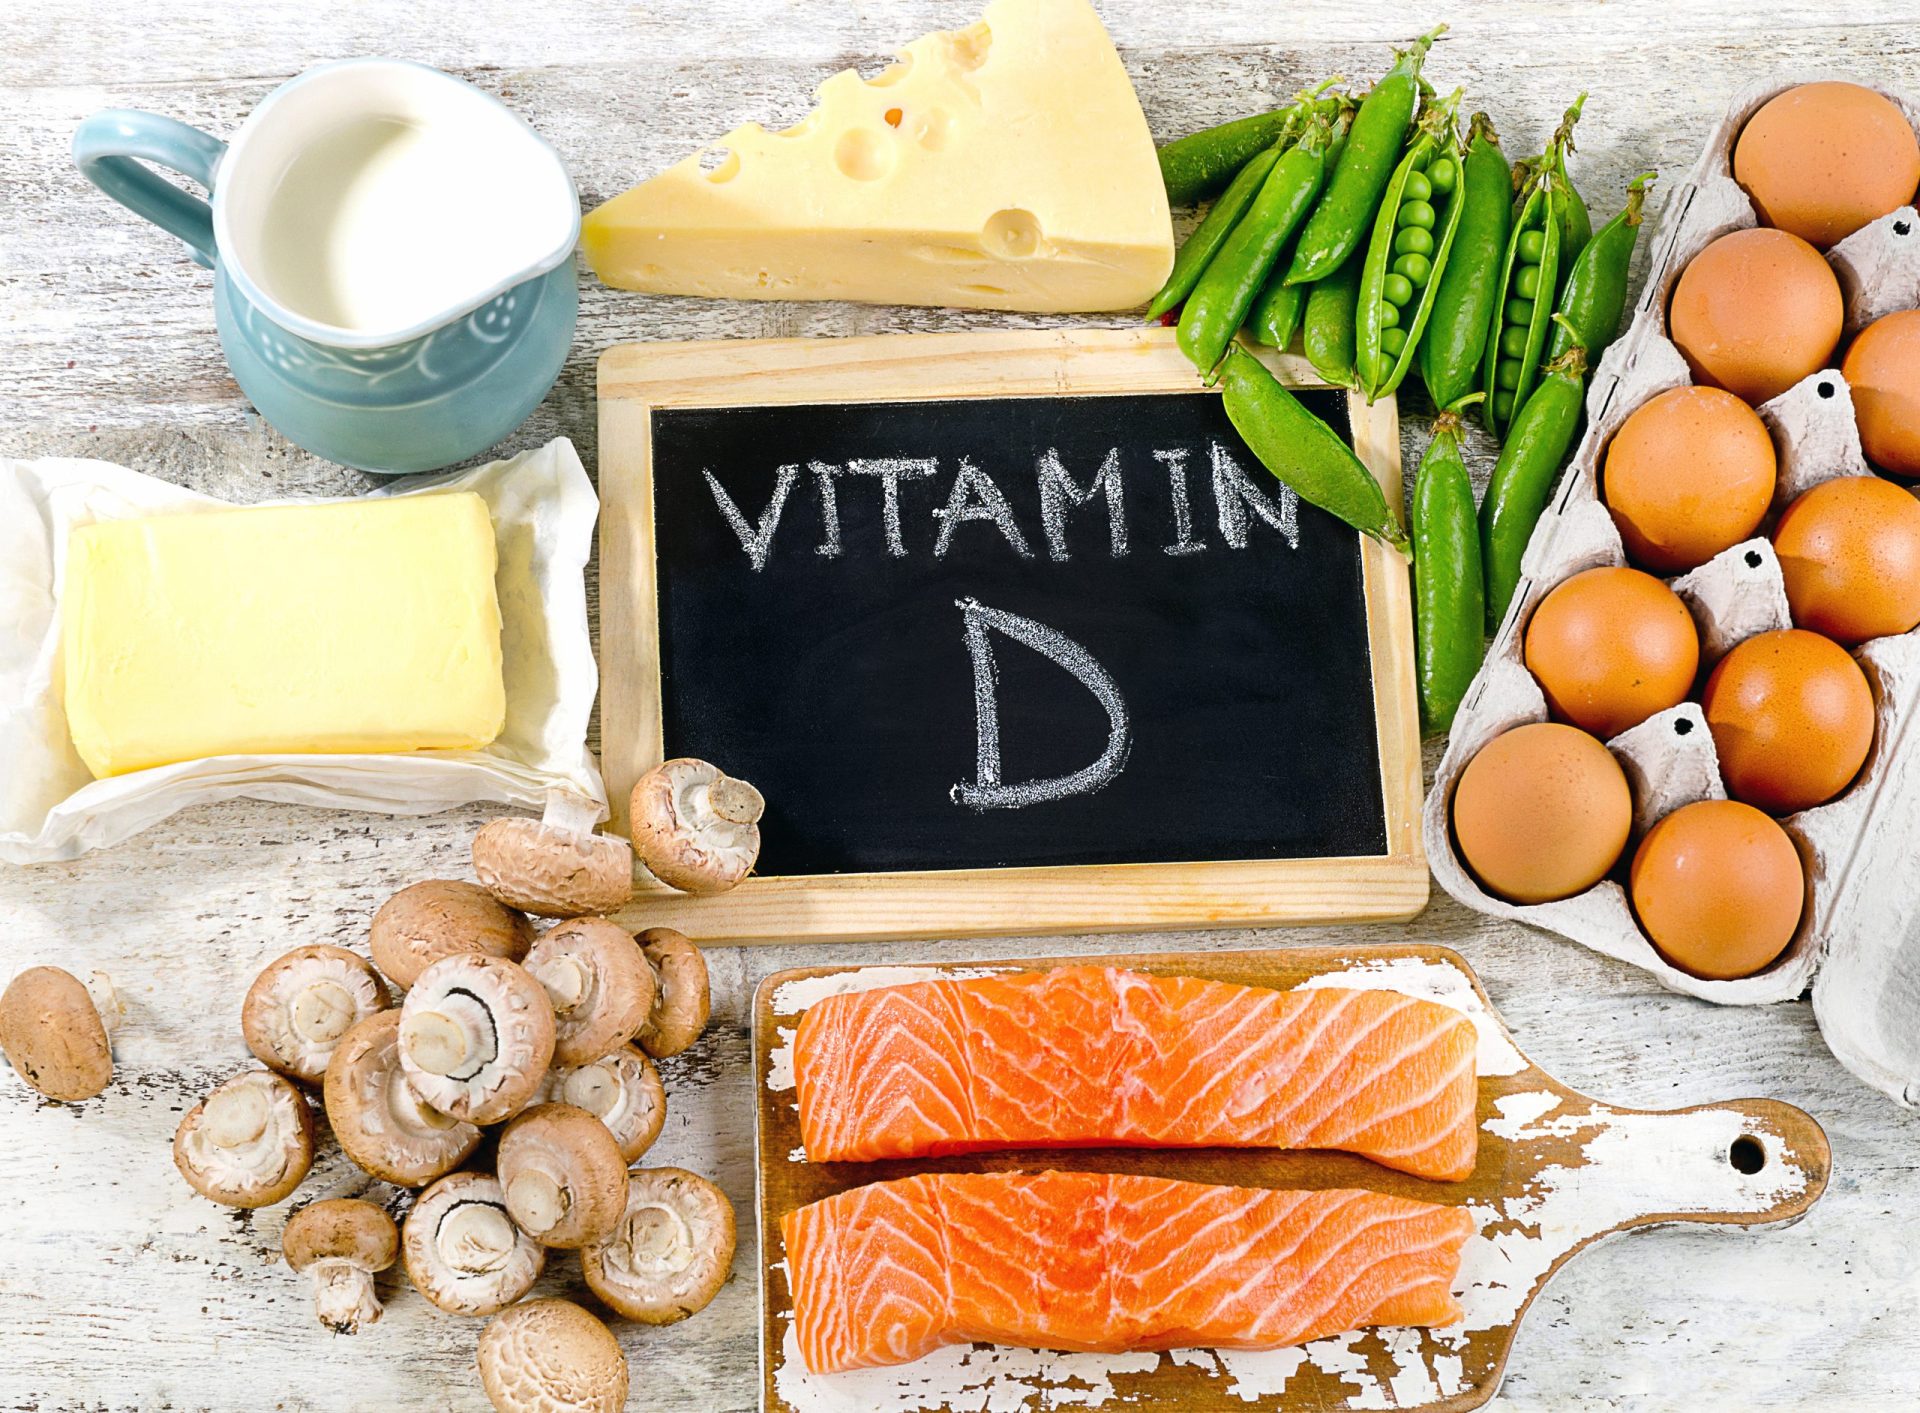 Investigadores afirmam que jovens portugueses têm falta de vitamina D